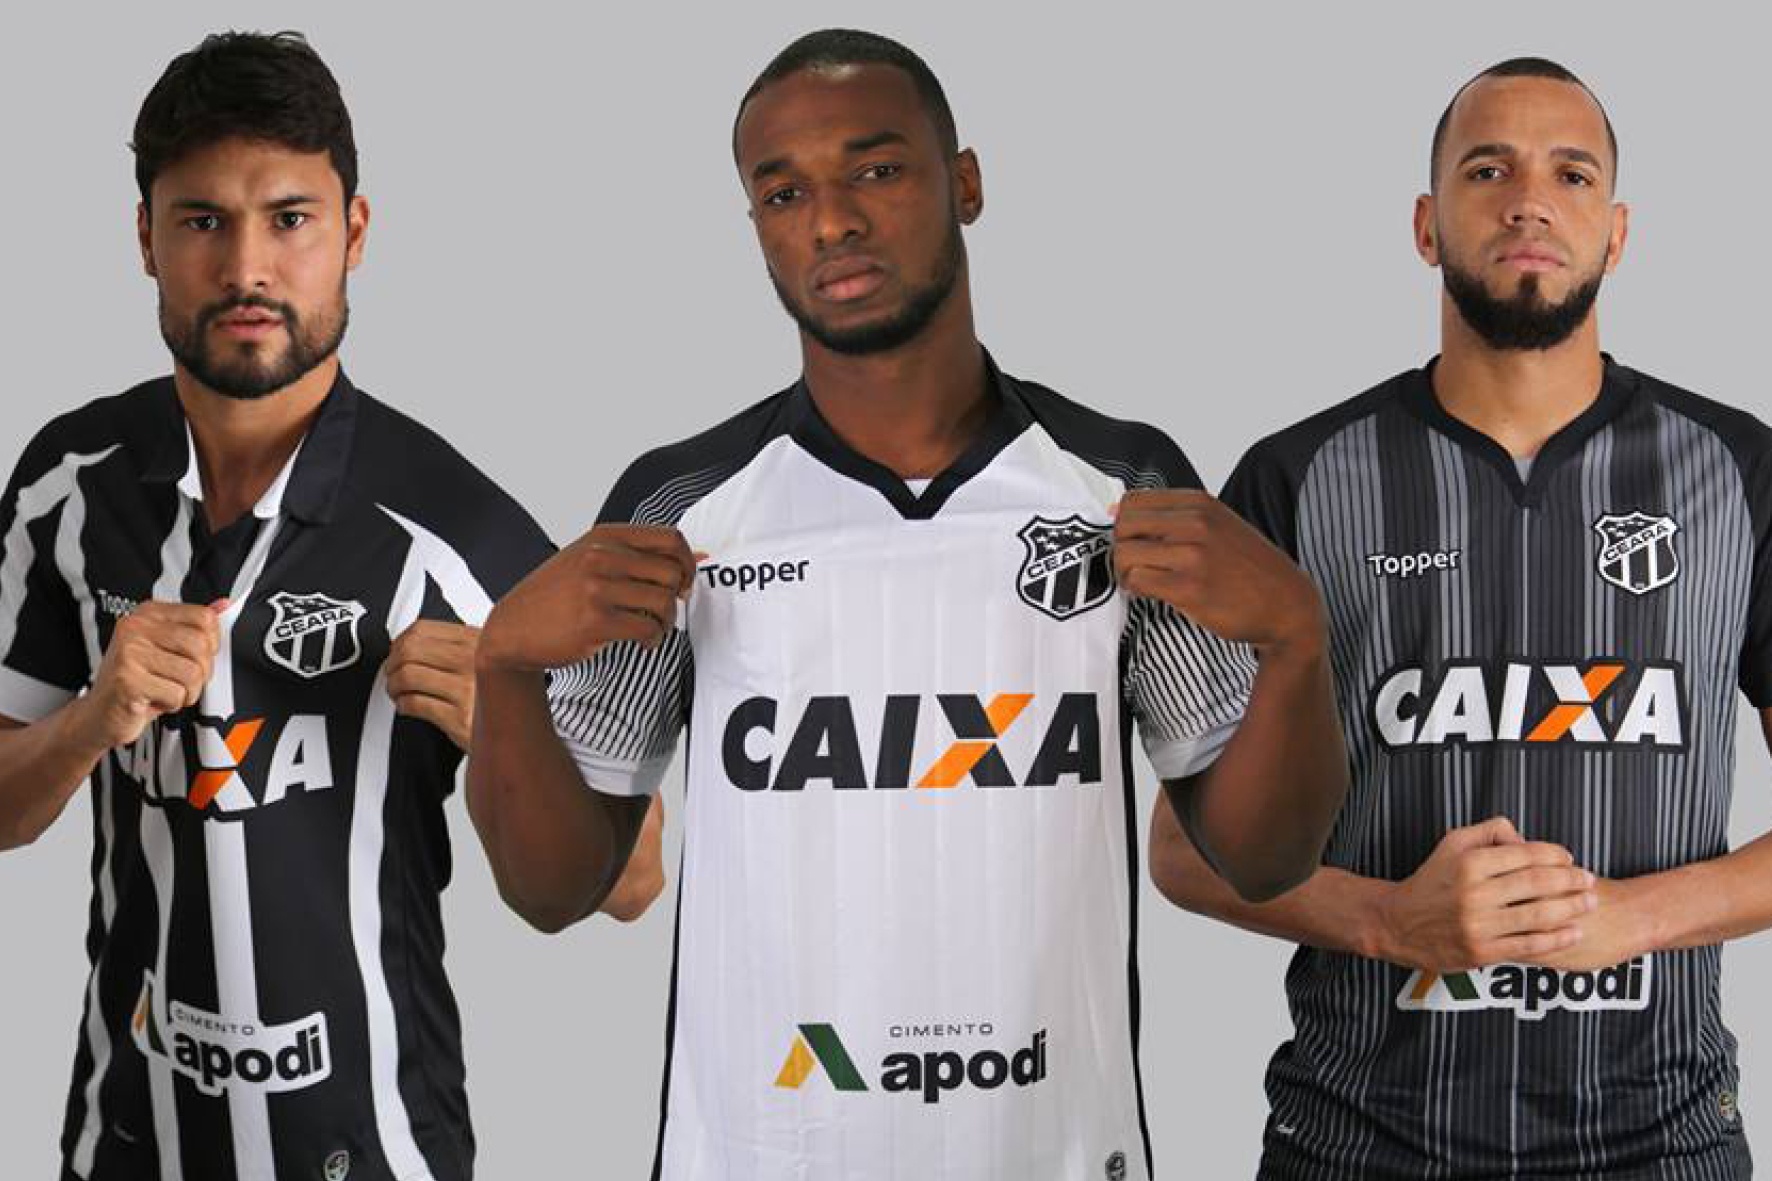 Ceará lança nova linha de uniformes Topper para a temporada 2017/2018